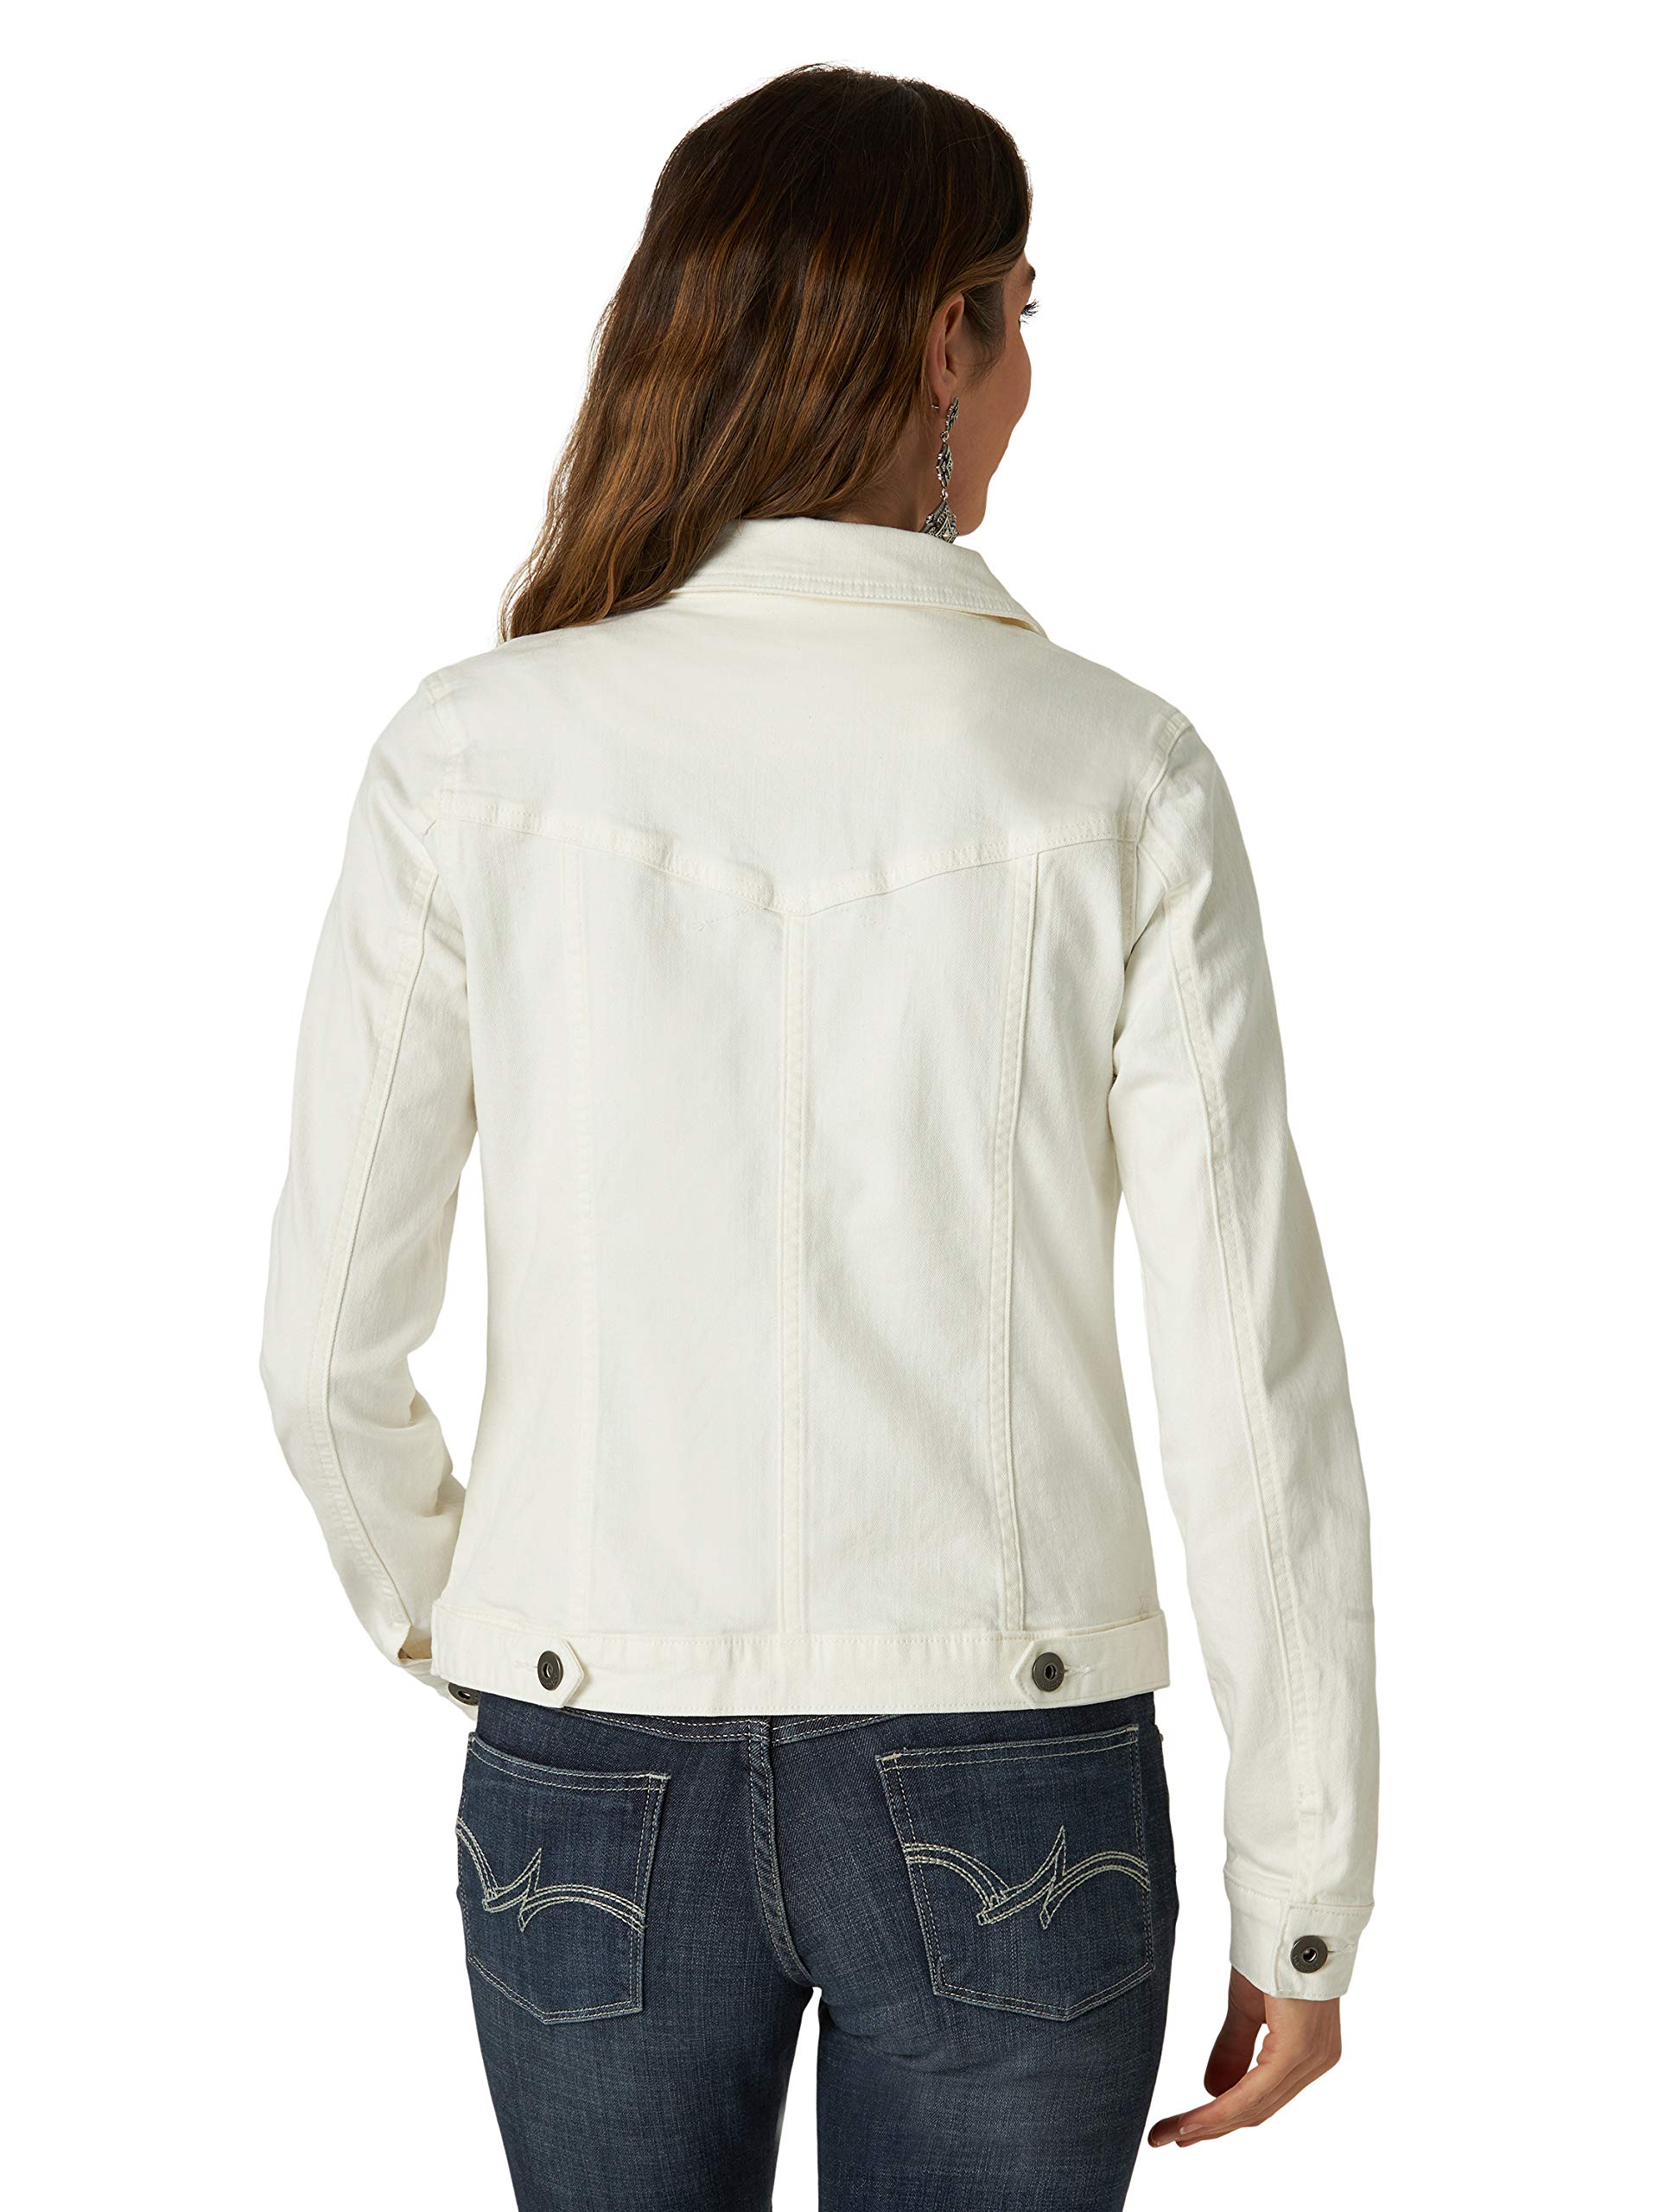 Wrangler Authentics Women's Stretch Denim Jacket